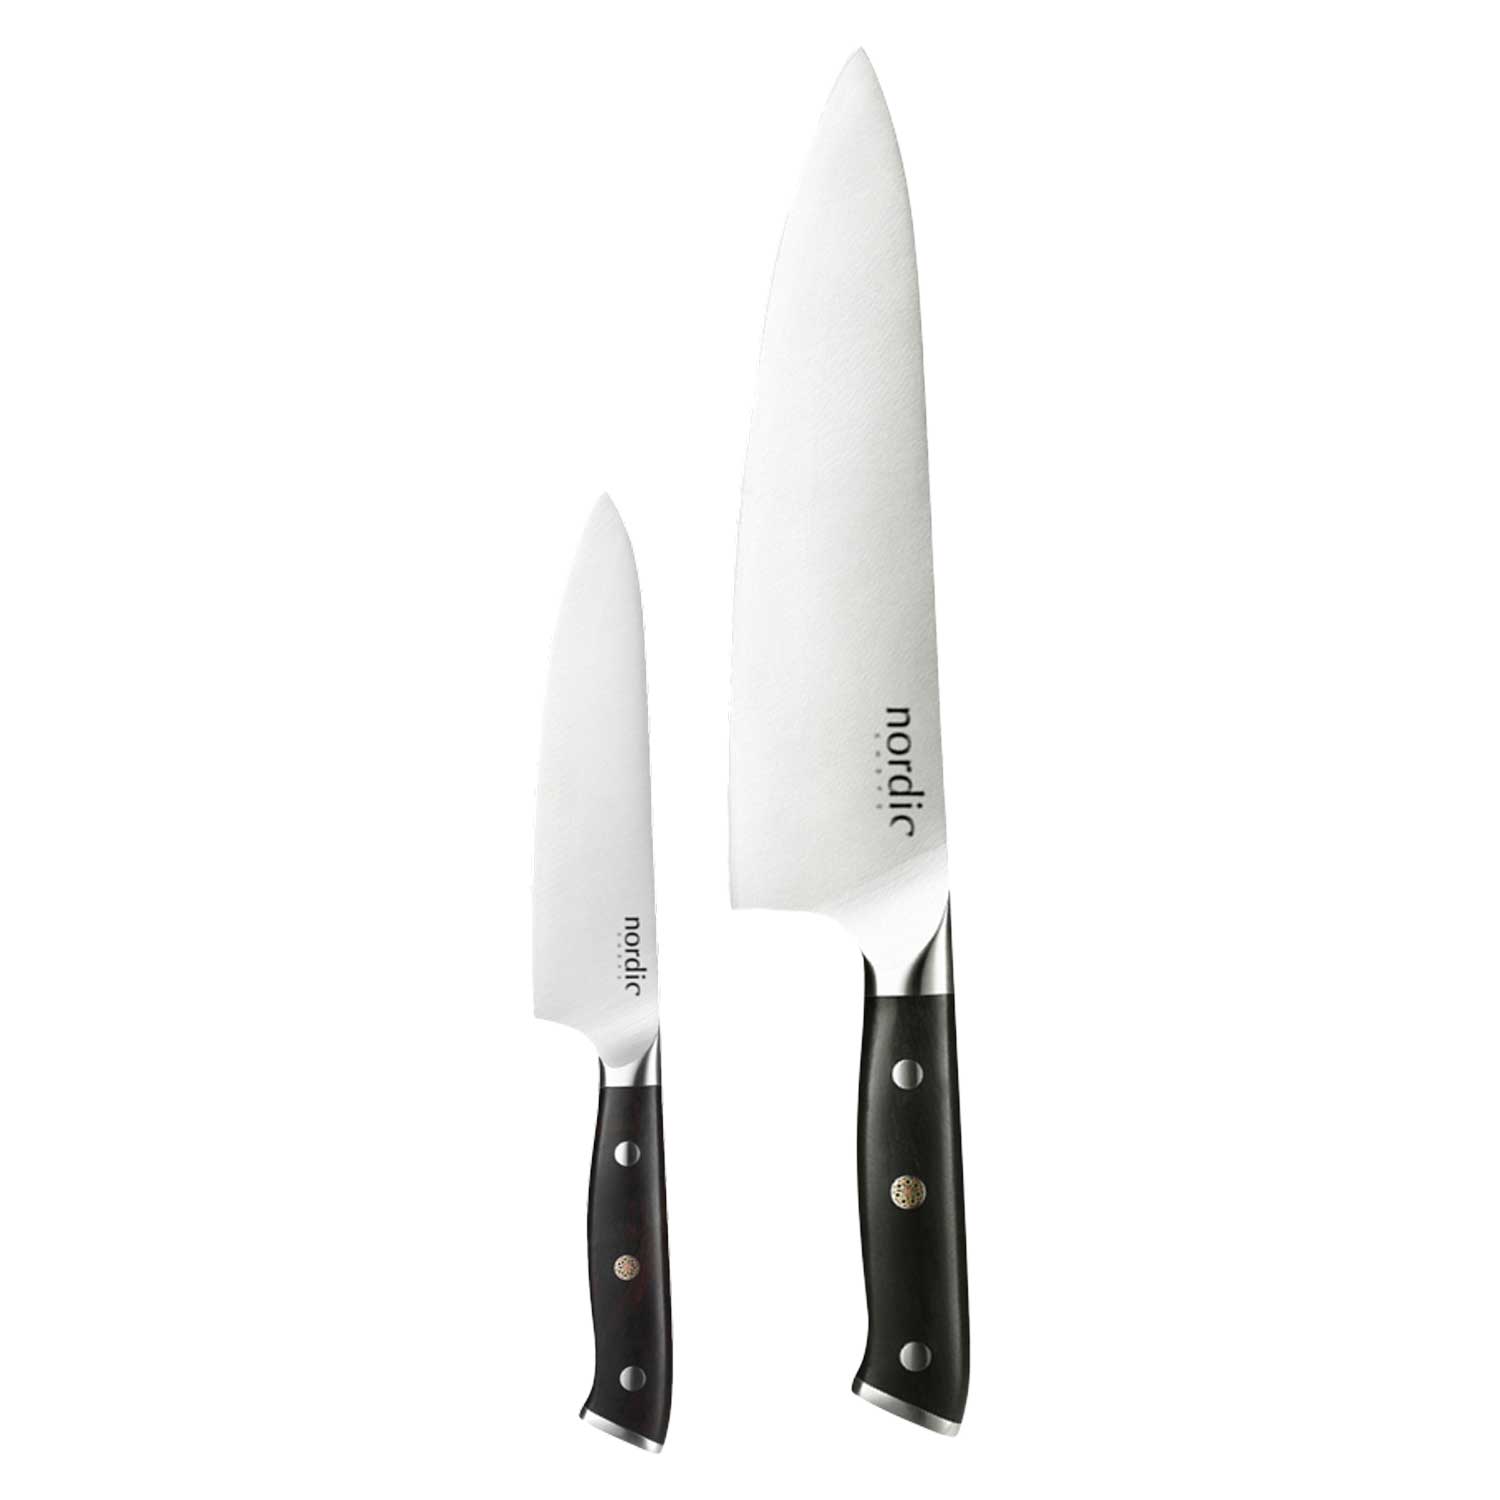 VG-10 Knife Set 3 Pcs - EGO @ RoyalDesign